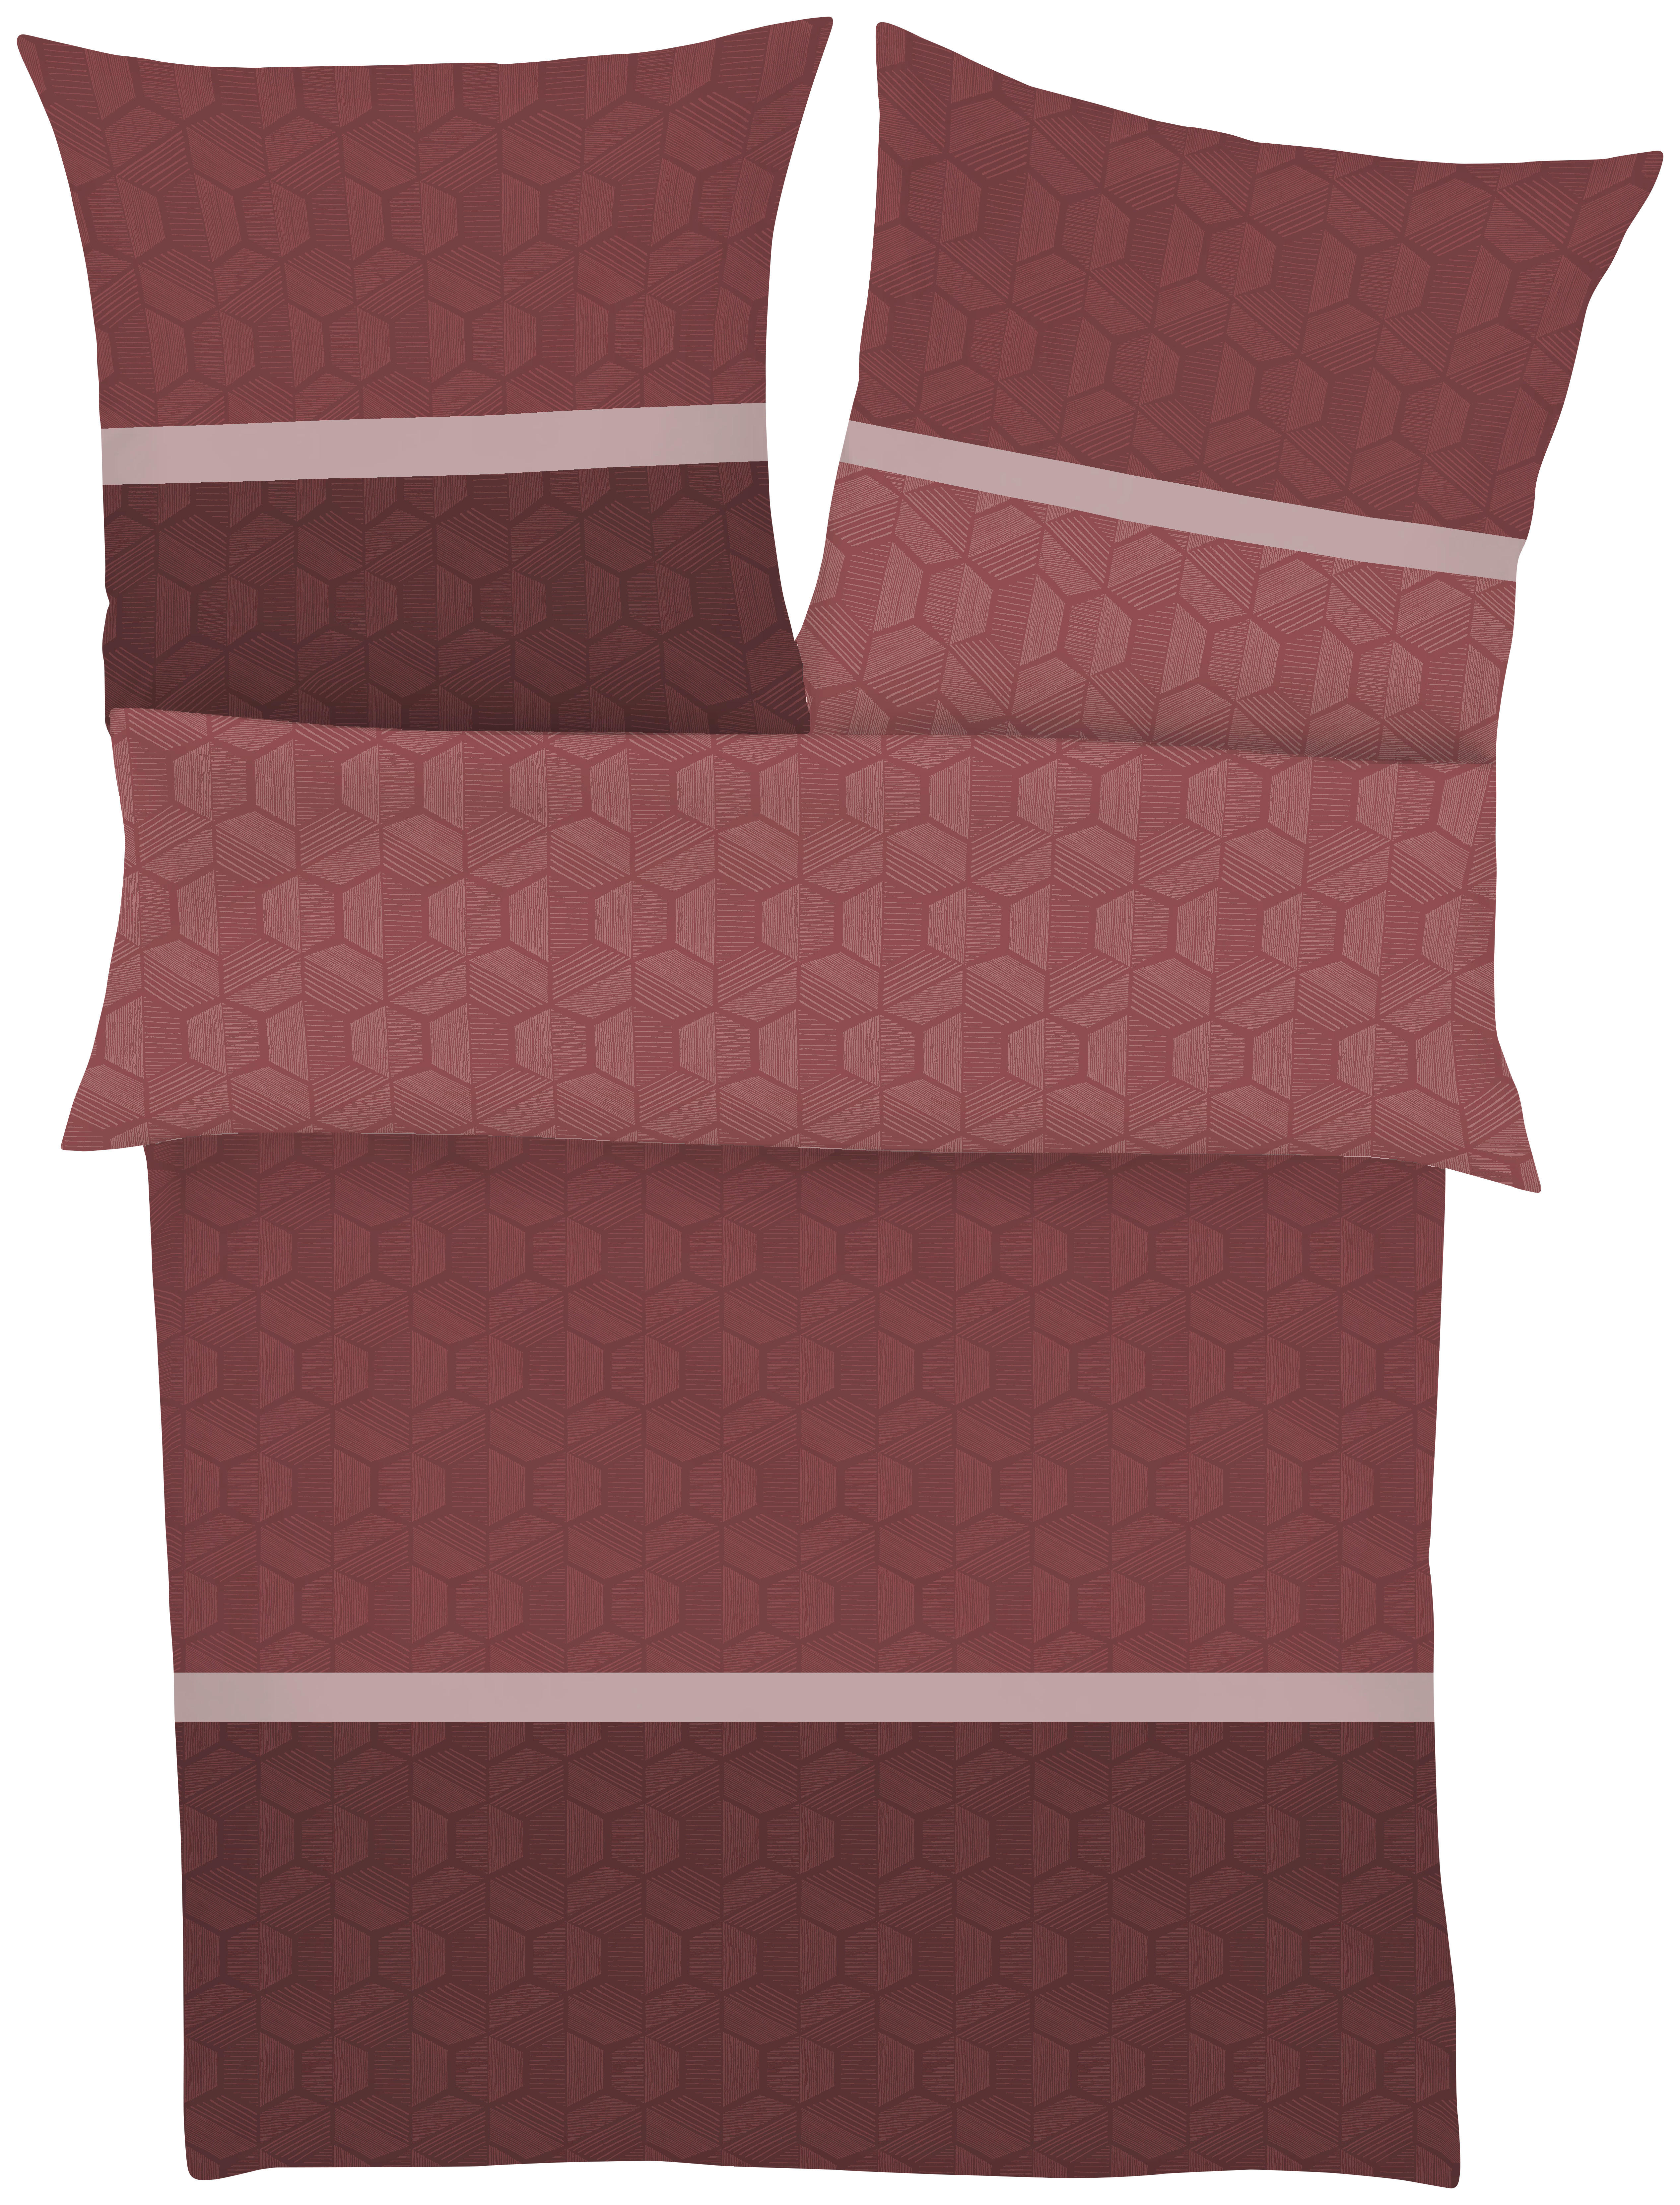 BETTWÄSCHE 140/200 cm  - Bordeaux/Rot, KONVENTIONELL, Textil (140/200cm) - LOOKS by W.Joop